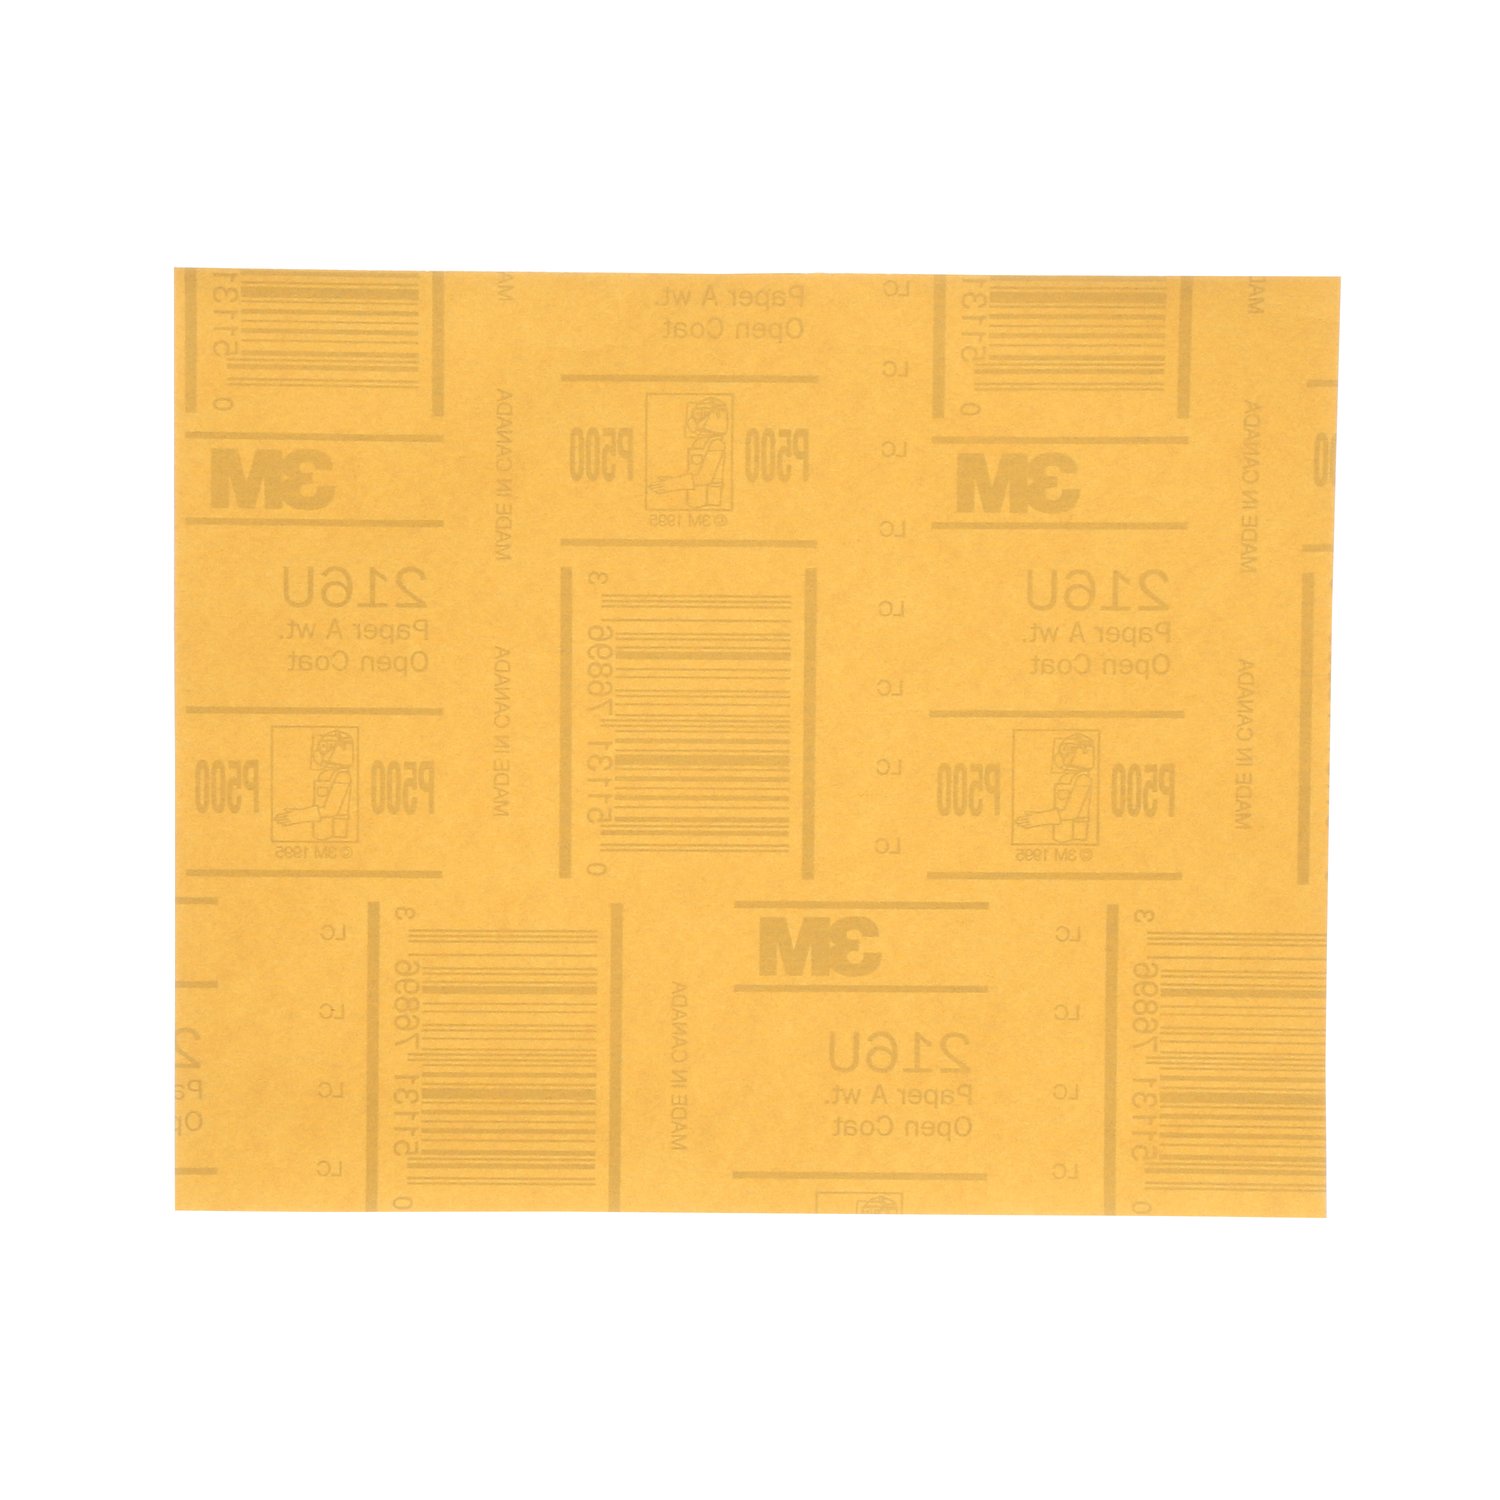 7000118277 - 3M Gold Abrasive Sheet, 02538, P500 grade, 9 in x 11 in, 50 sheets per
pack, 5 packs per case